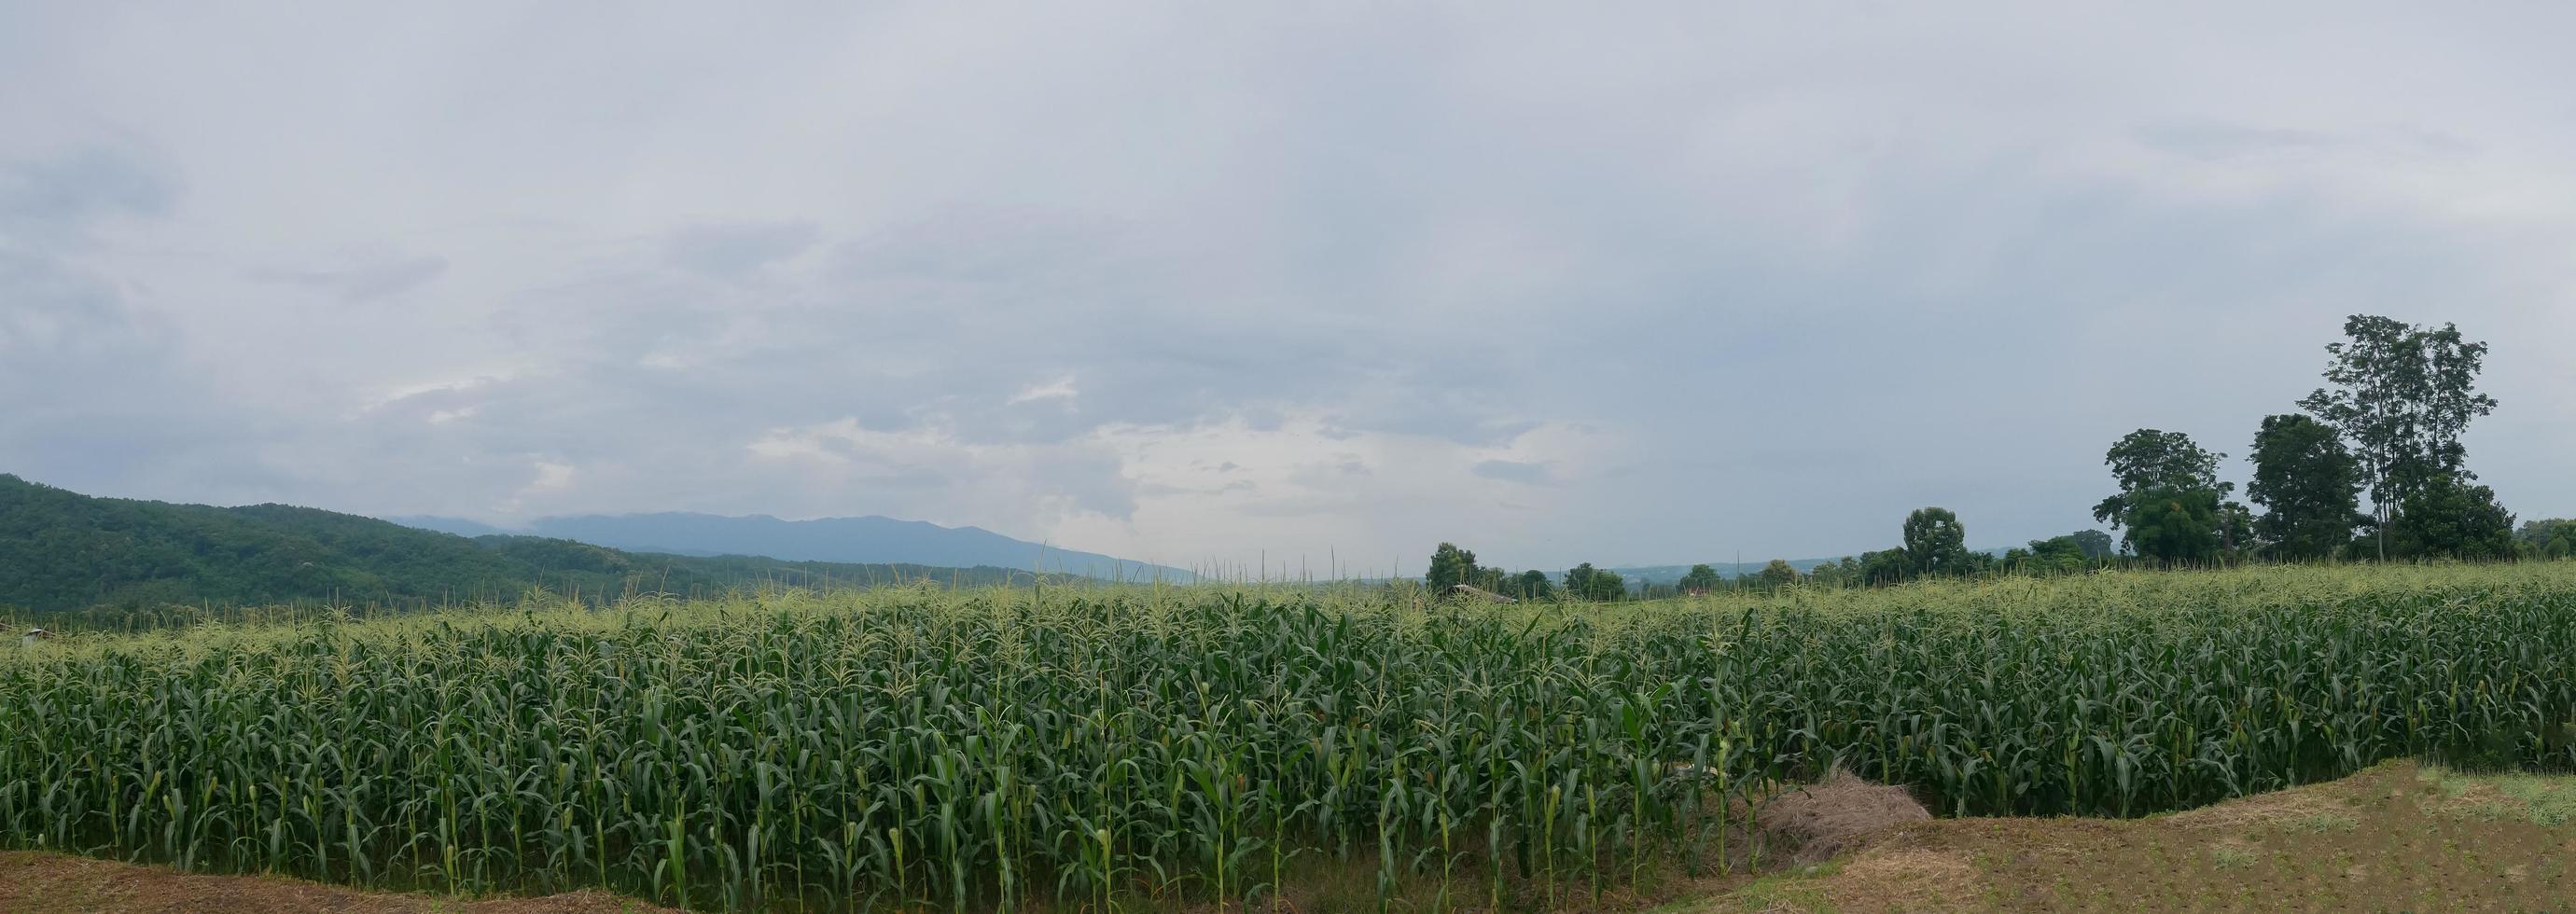 panorama maisfelder schöne naturansicht regenzeit foto